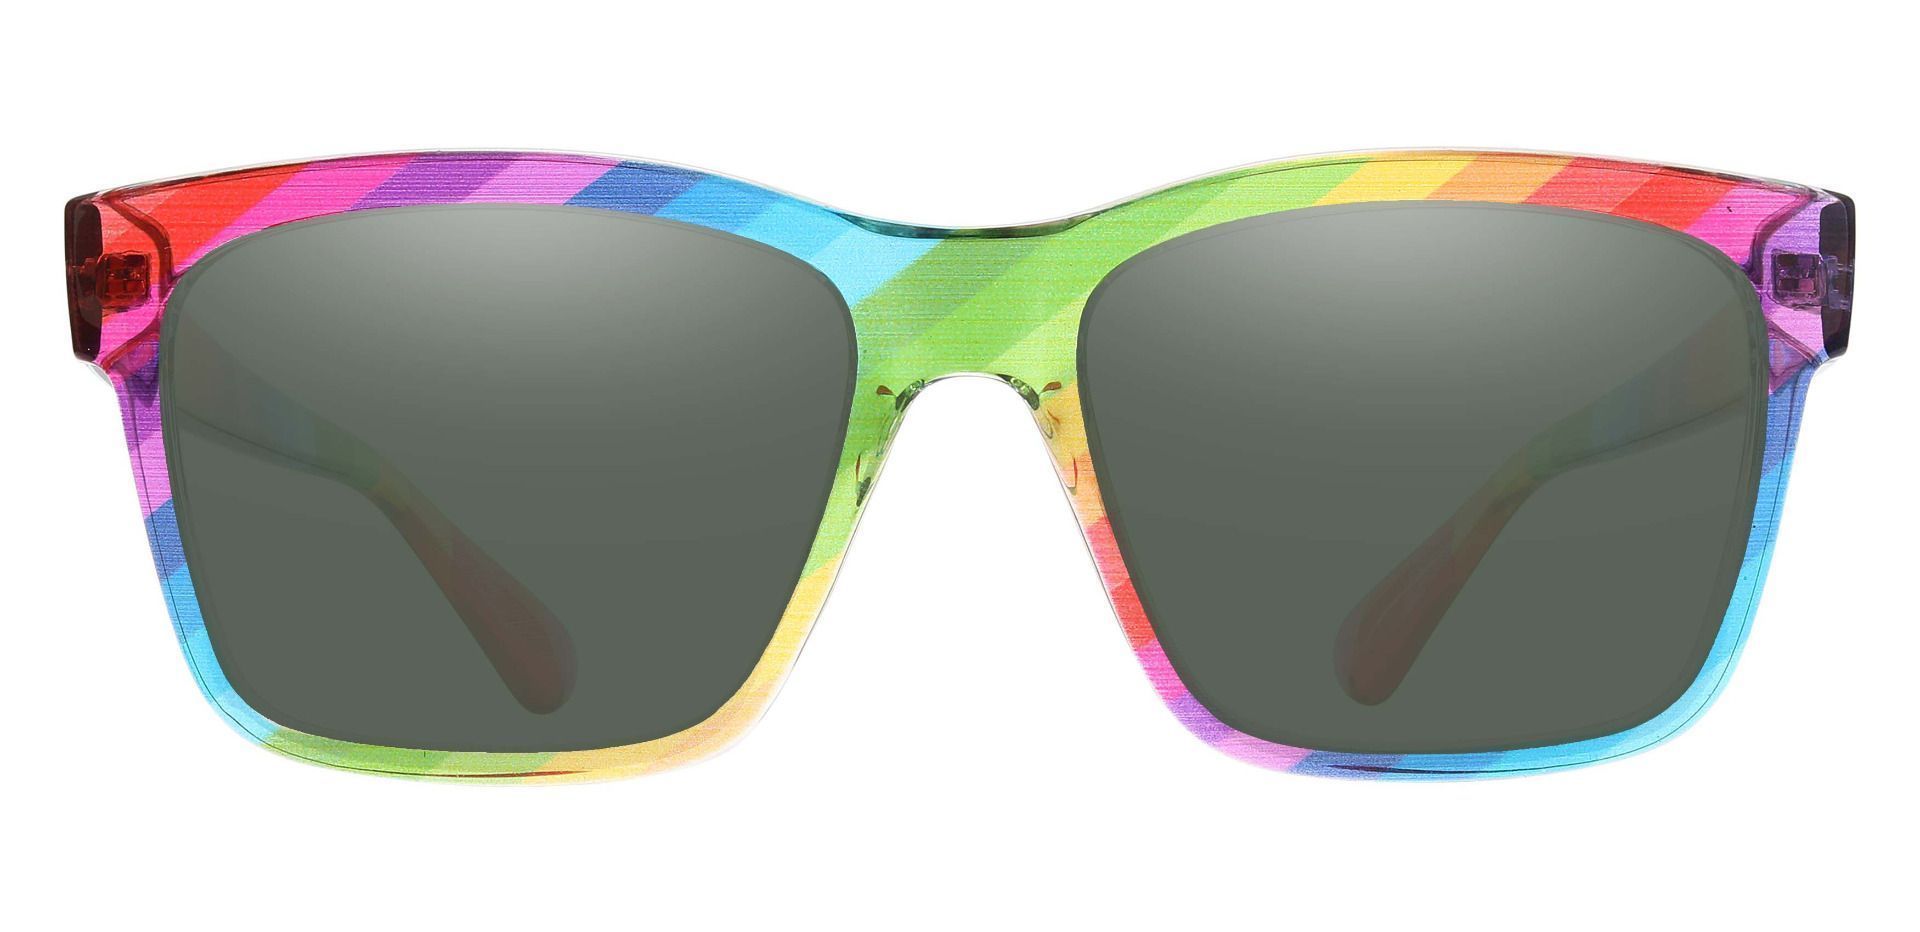 Hatton Square Prescription Sunglasses - Multi Color Frame With Green Lenses